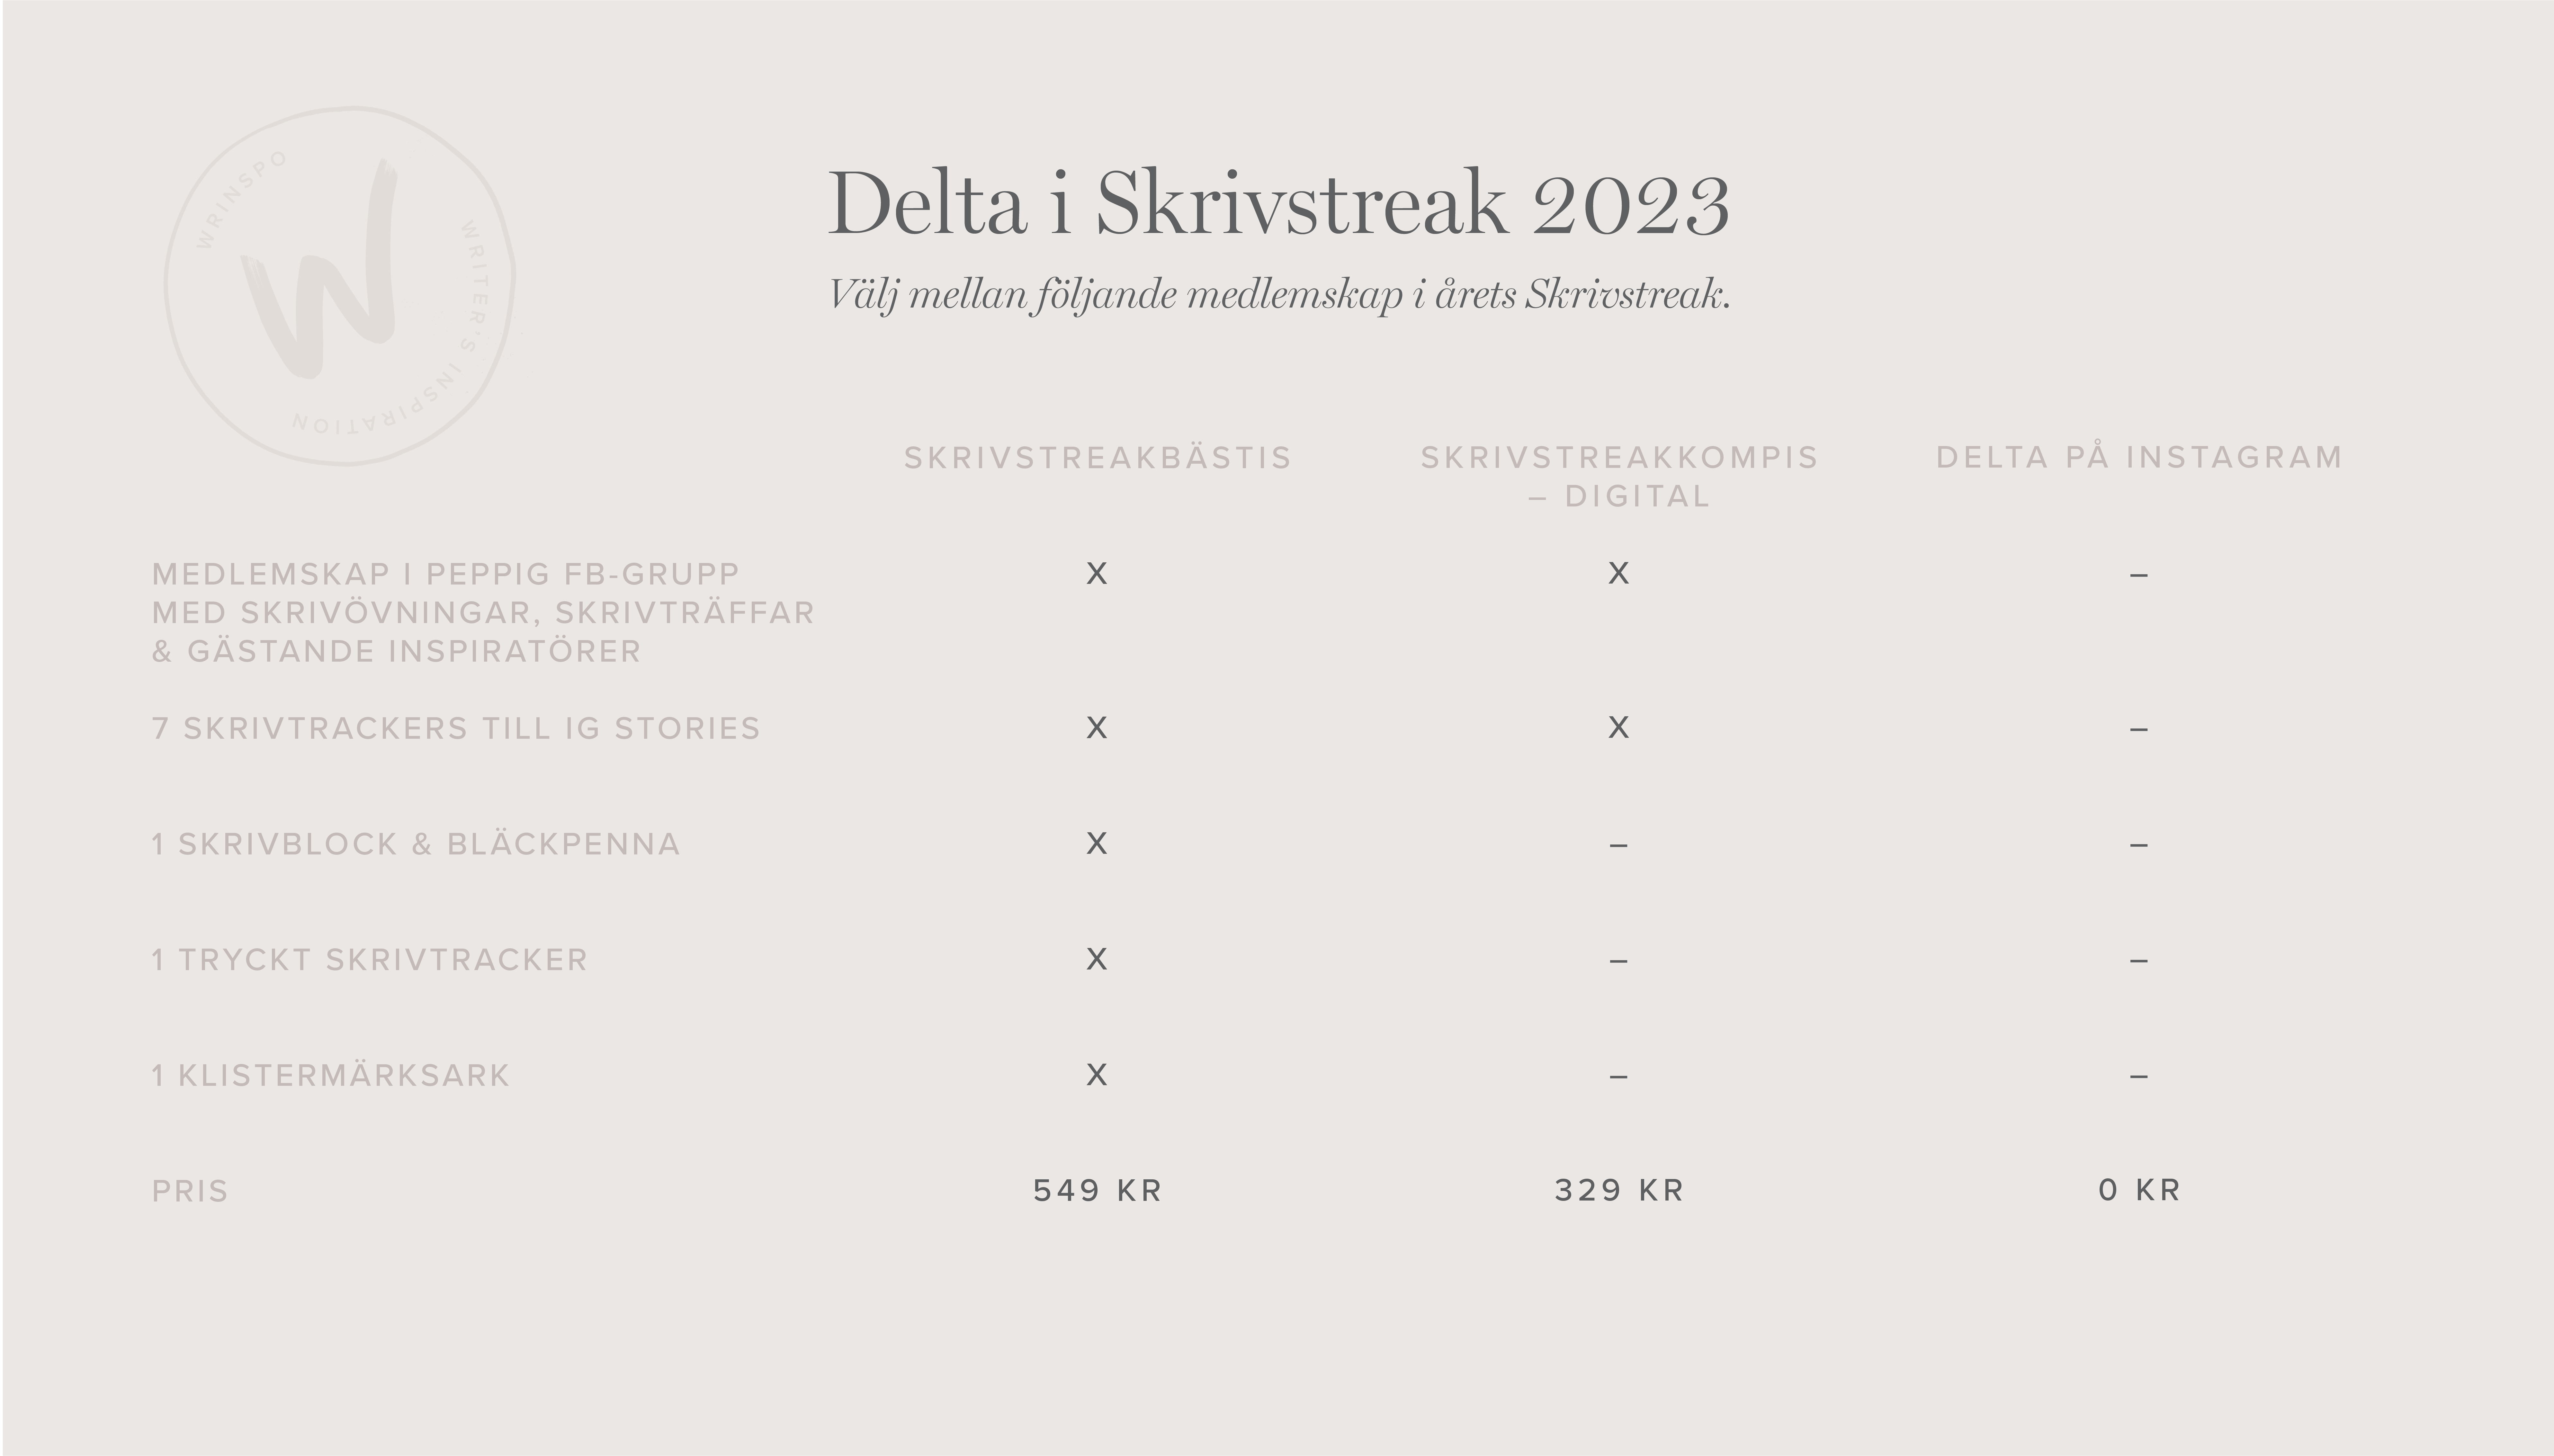 Delta i Skrivstreak 2022